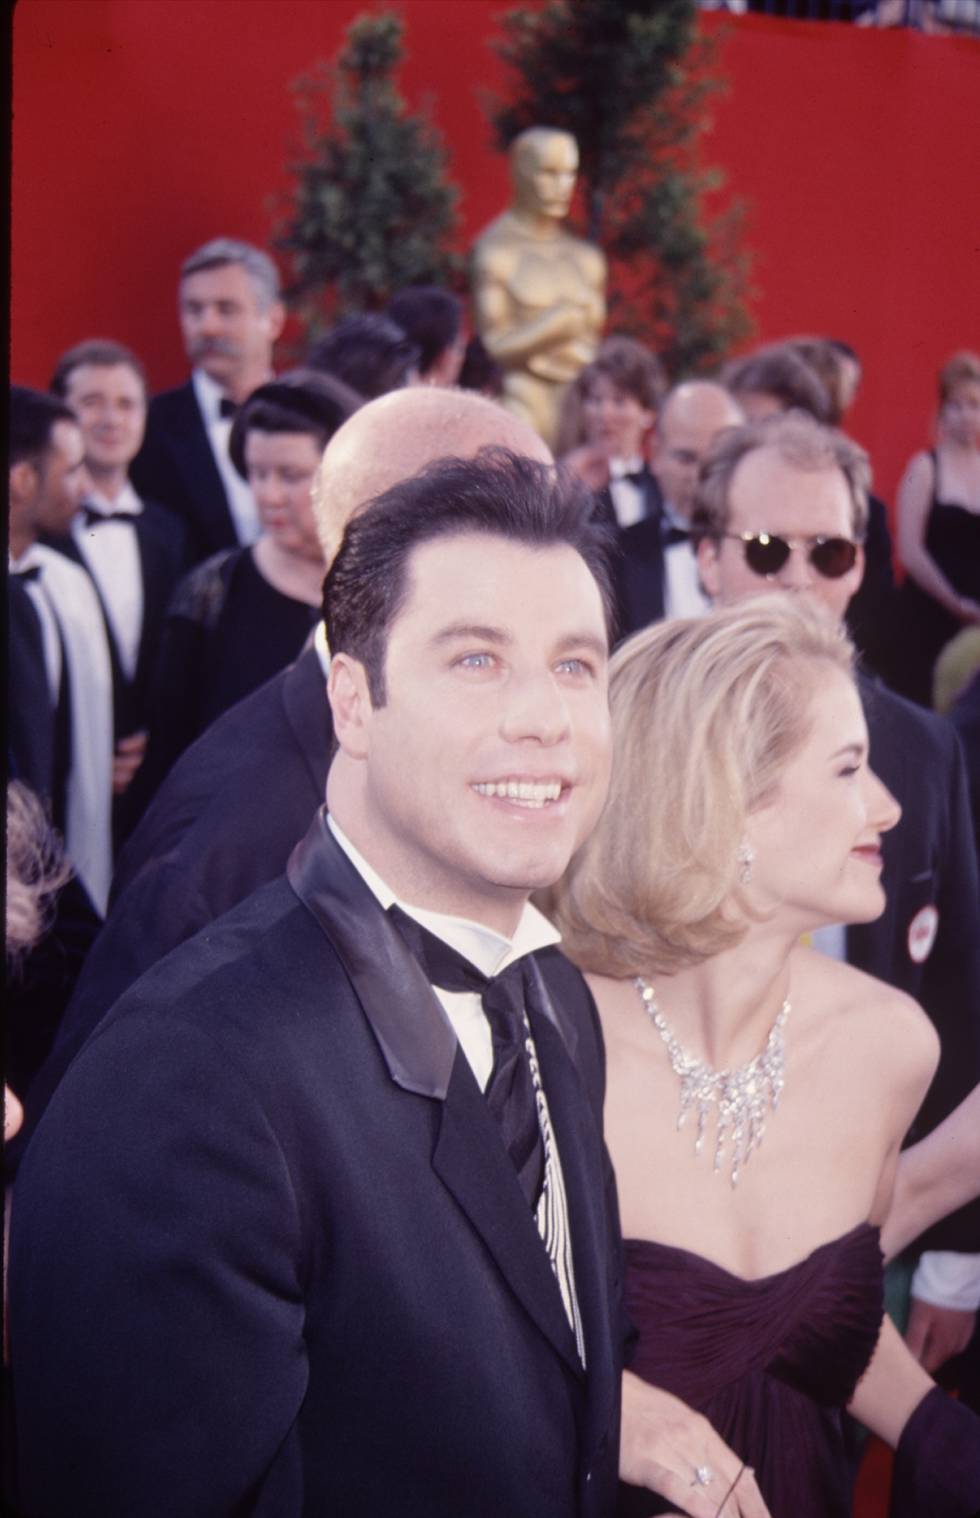 En 1995, tras unos años de películas mal valoradas por la crítica y fracasos en taquilla, John Travolta estaba en lo más alto gracias a Pulp Fiction. En la imagen, junto a Kelly Preston en los Oscar de ese año, cuando estuvo nominado por el papel de Vincent Vega.